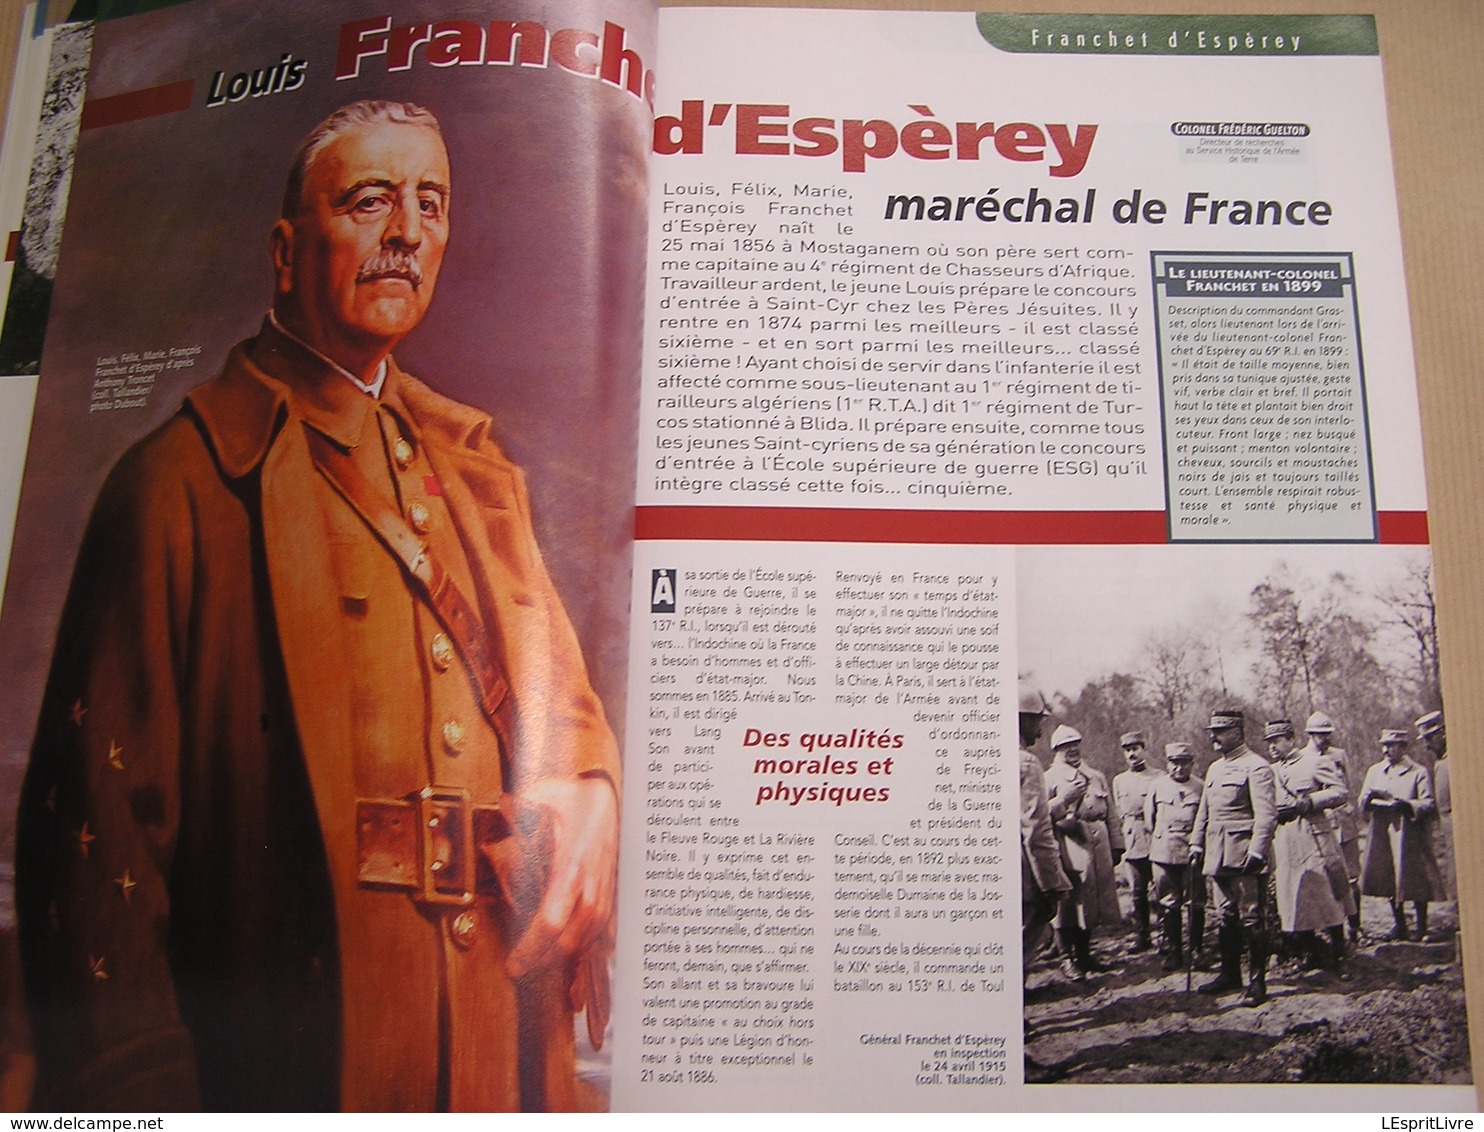 14 18 Le Magazine de la Grande Guerre N° 18 Marne Verdun Moulin de Souain Patton Aviation  Artisanat Tranchée Fournier